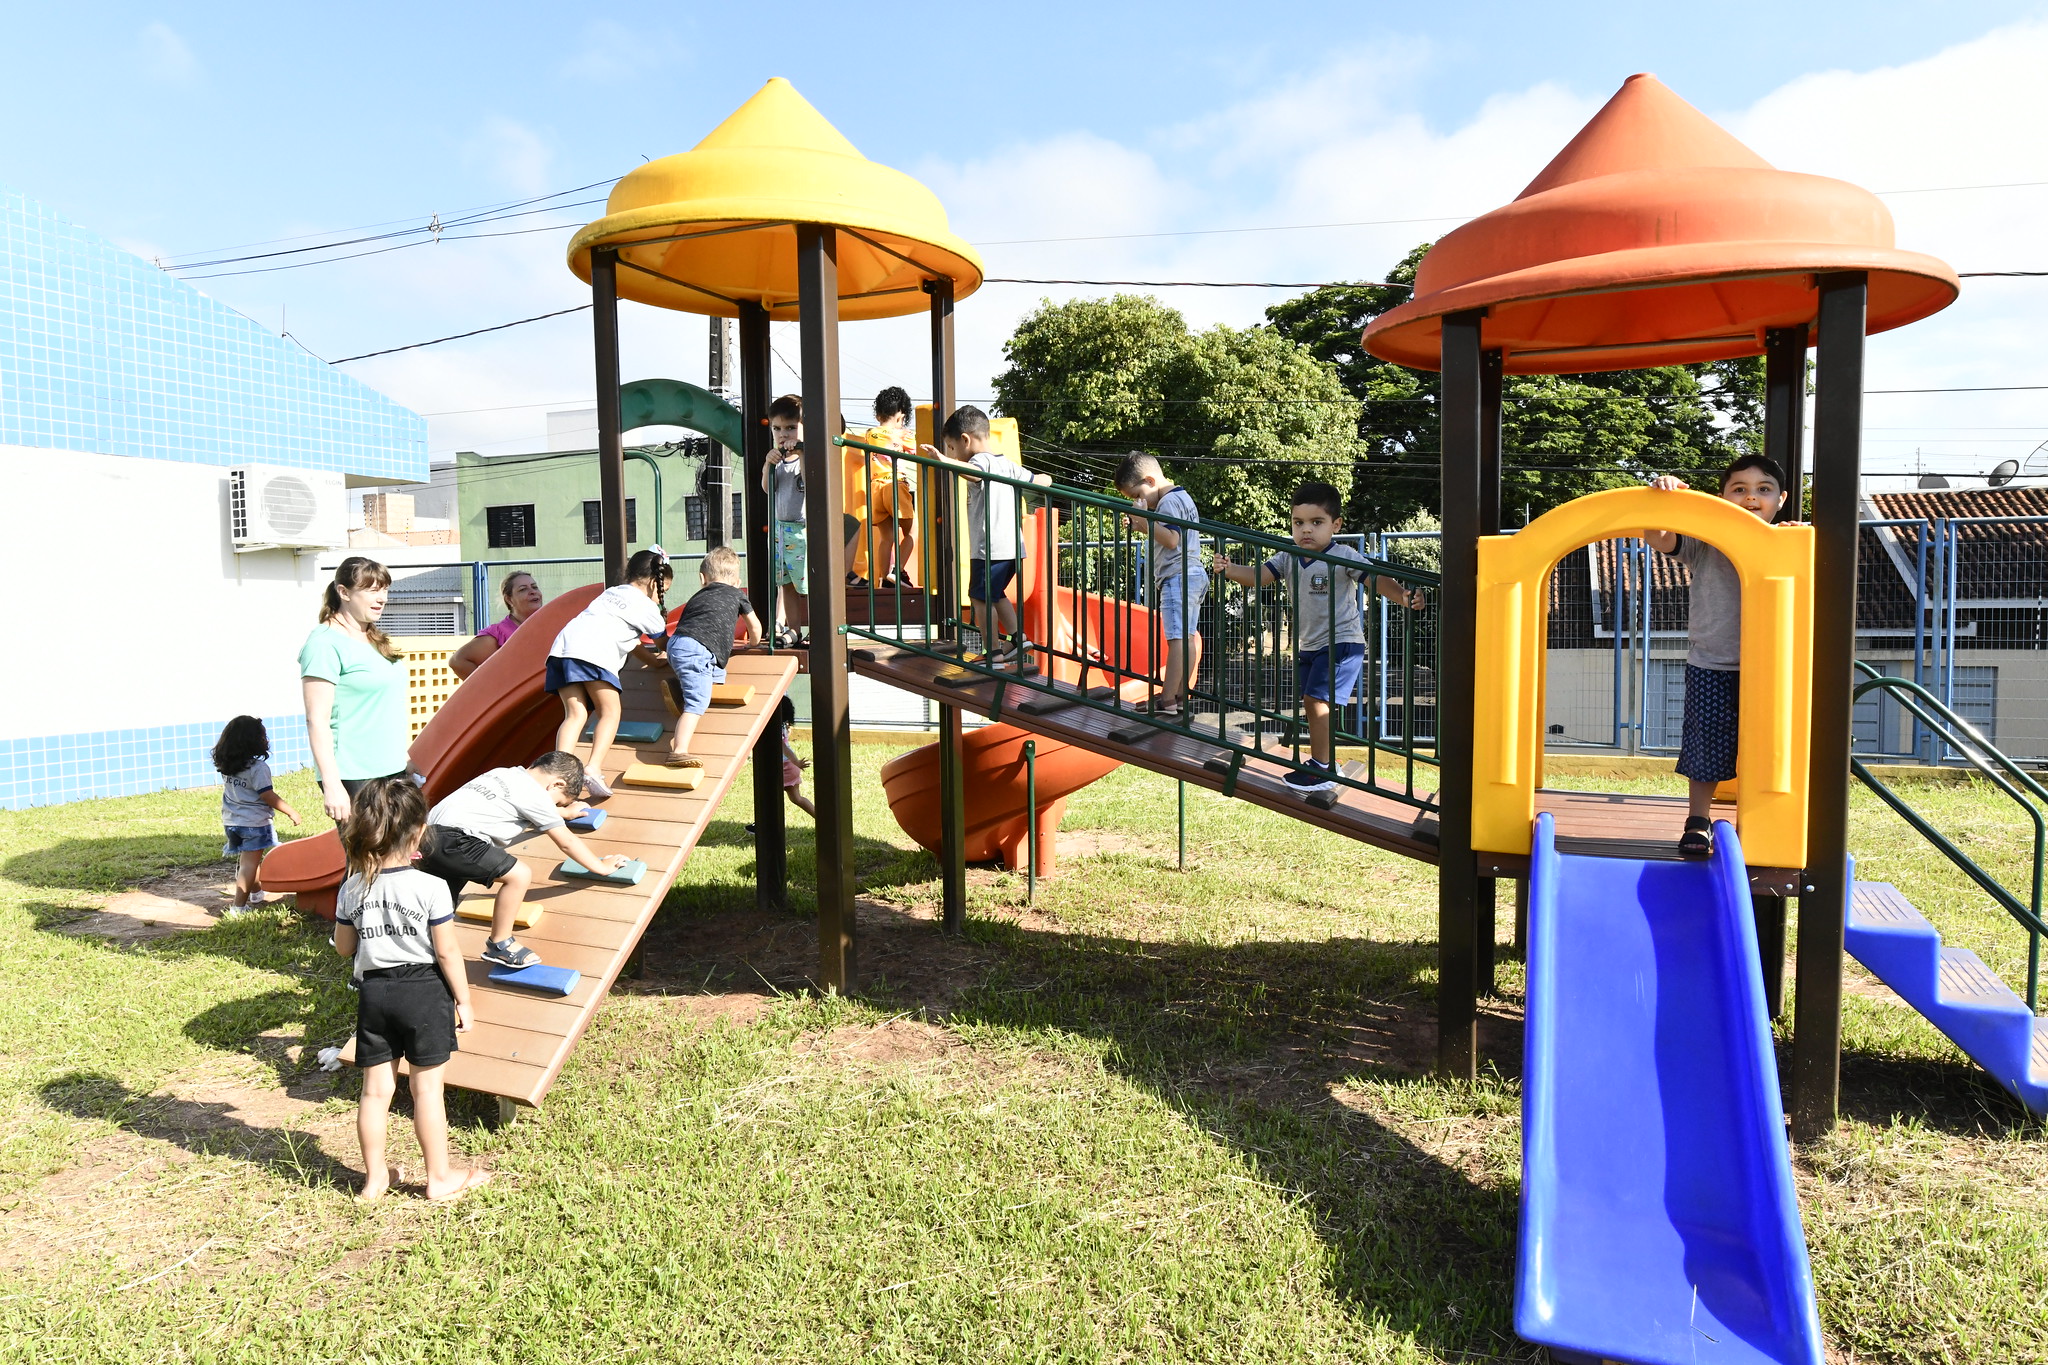 Crianças brincam em parque infantil no interior de escola municipal